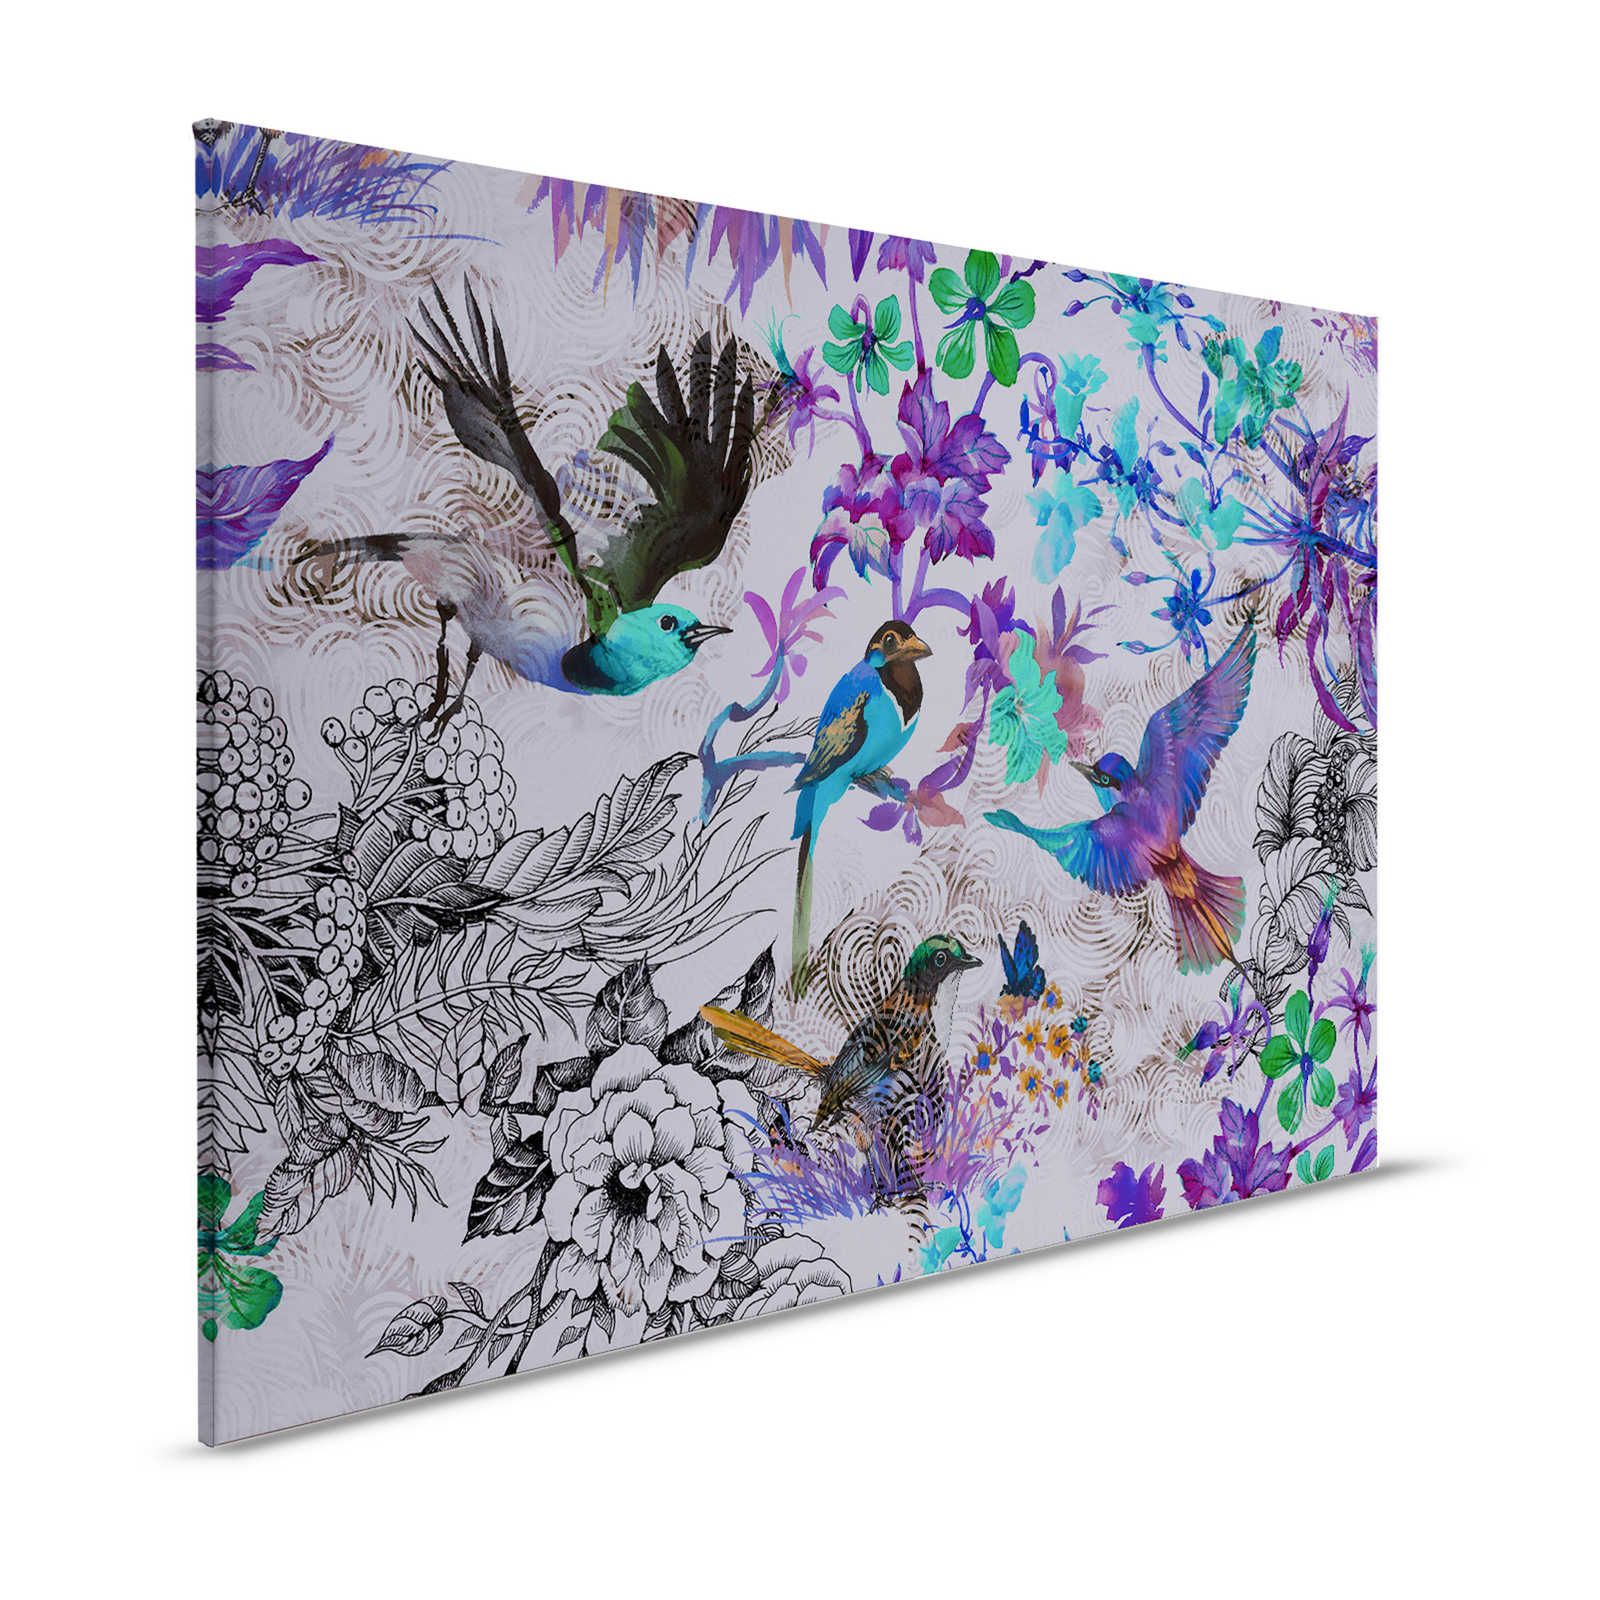 Paars canvas schilderij met bloemen en vogels - 1,20 m x 0,80 m
